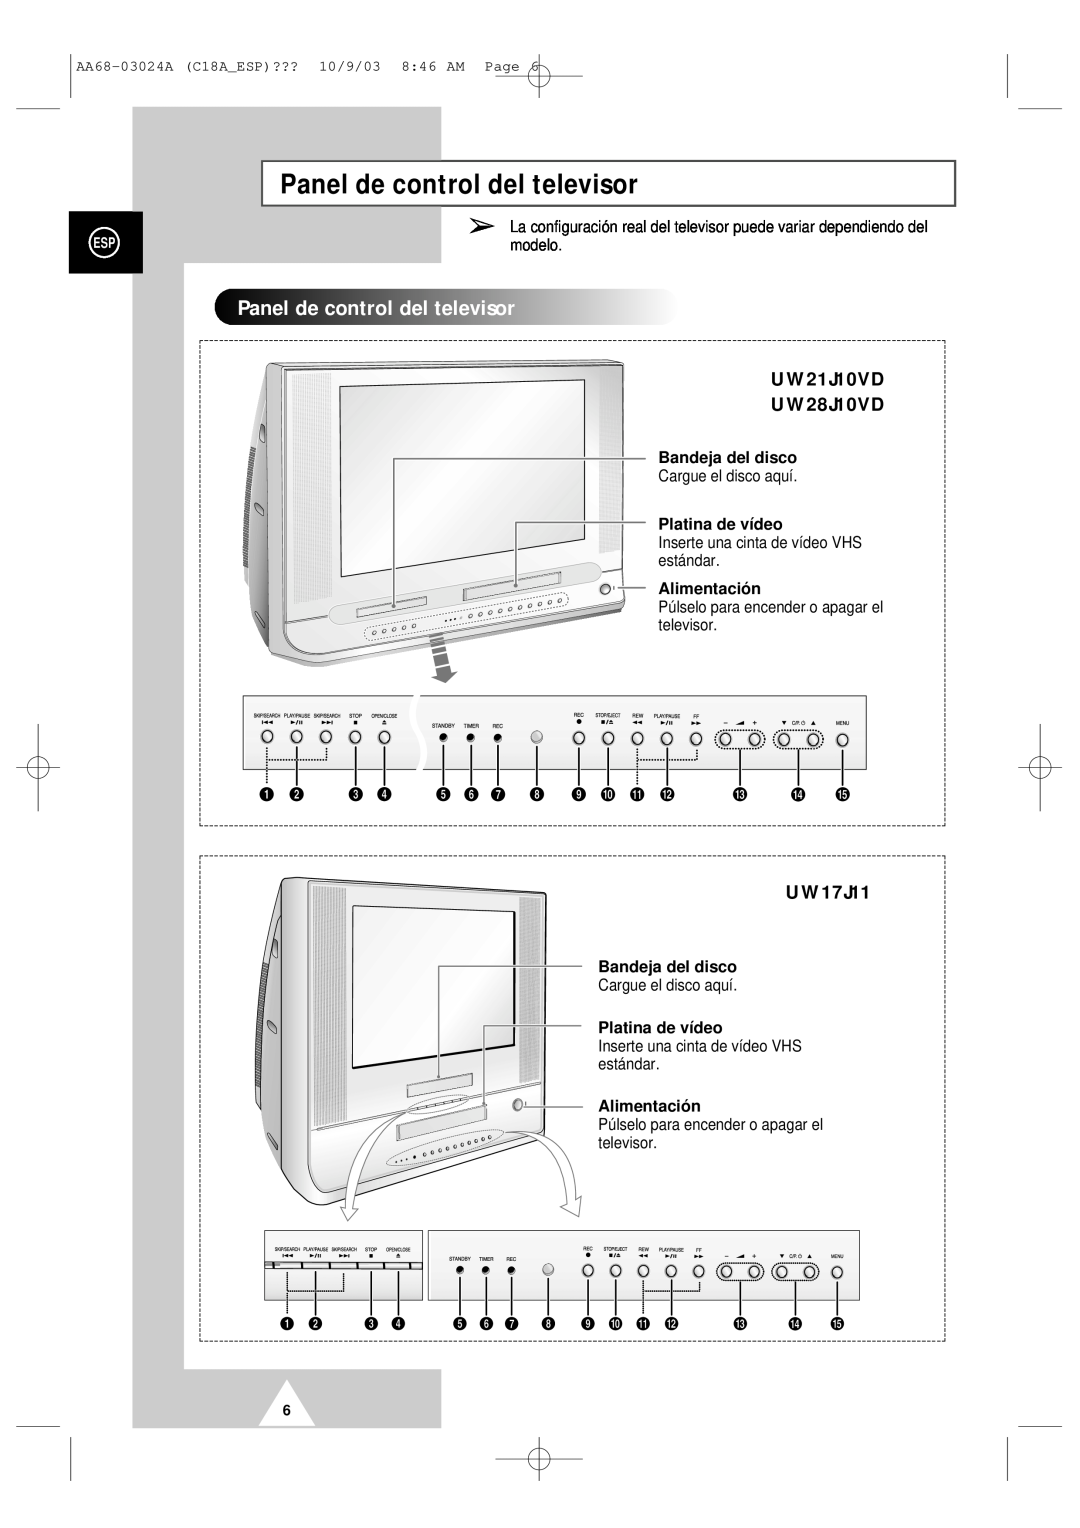 Samsung UW17J11VD5XXEC, UW17J11VD5XXEF Panel de control del televisor, Paneldecontroldeltelevisor, UW21J10VD UW28J10VD 